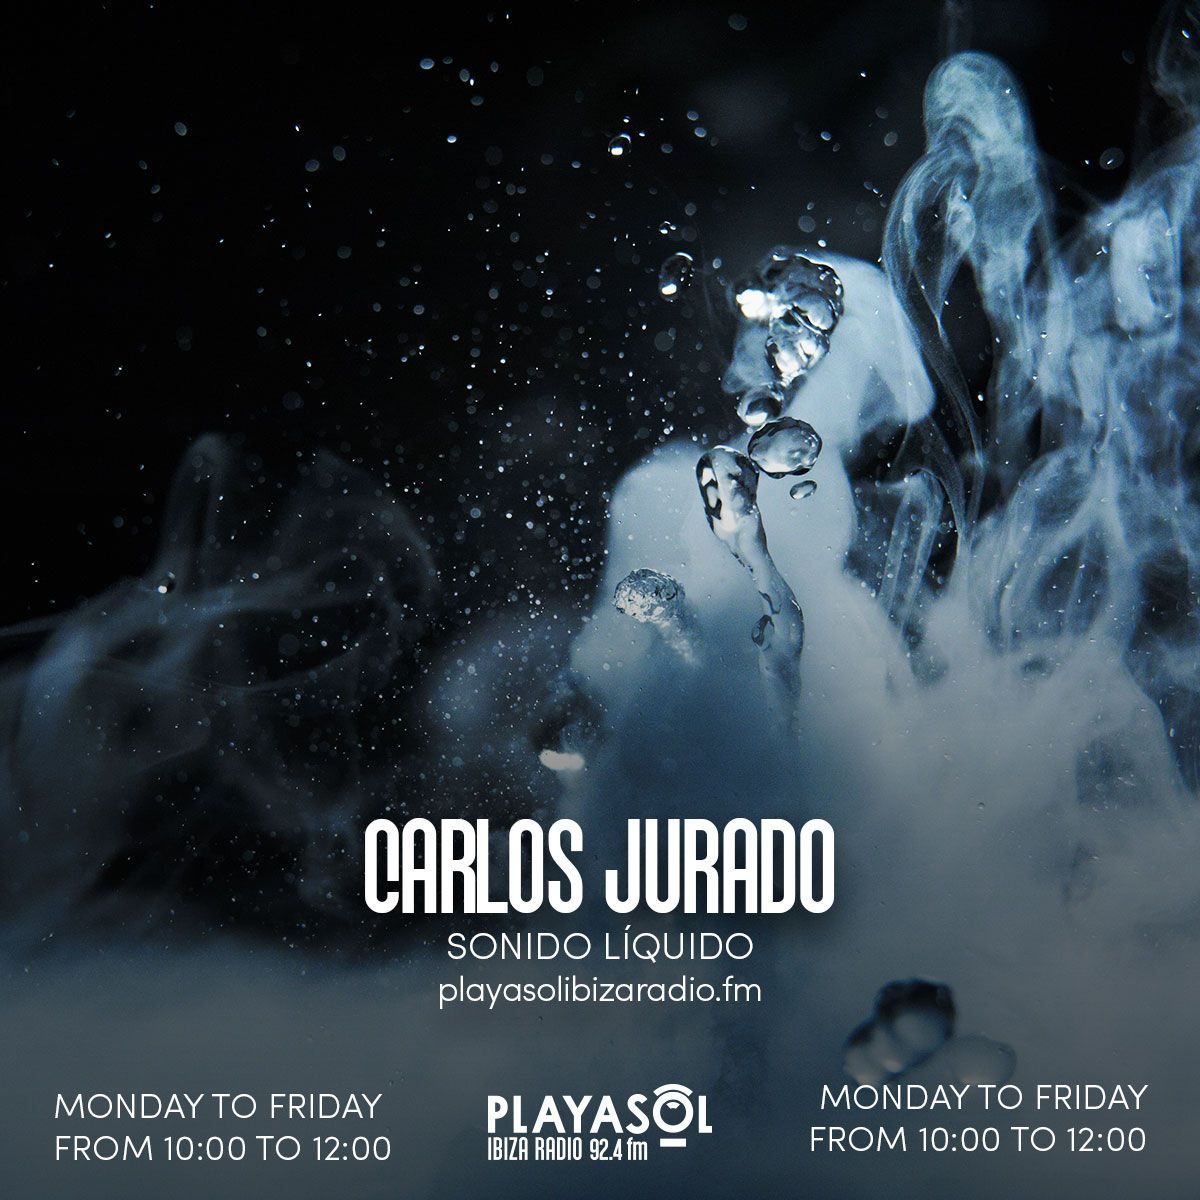 Sonido Liquido by Carlos Jurado at Playasol radio